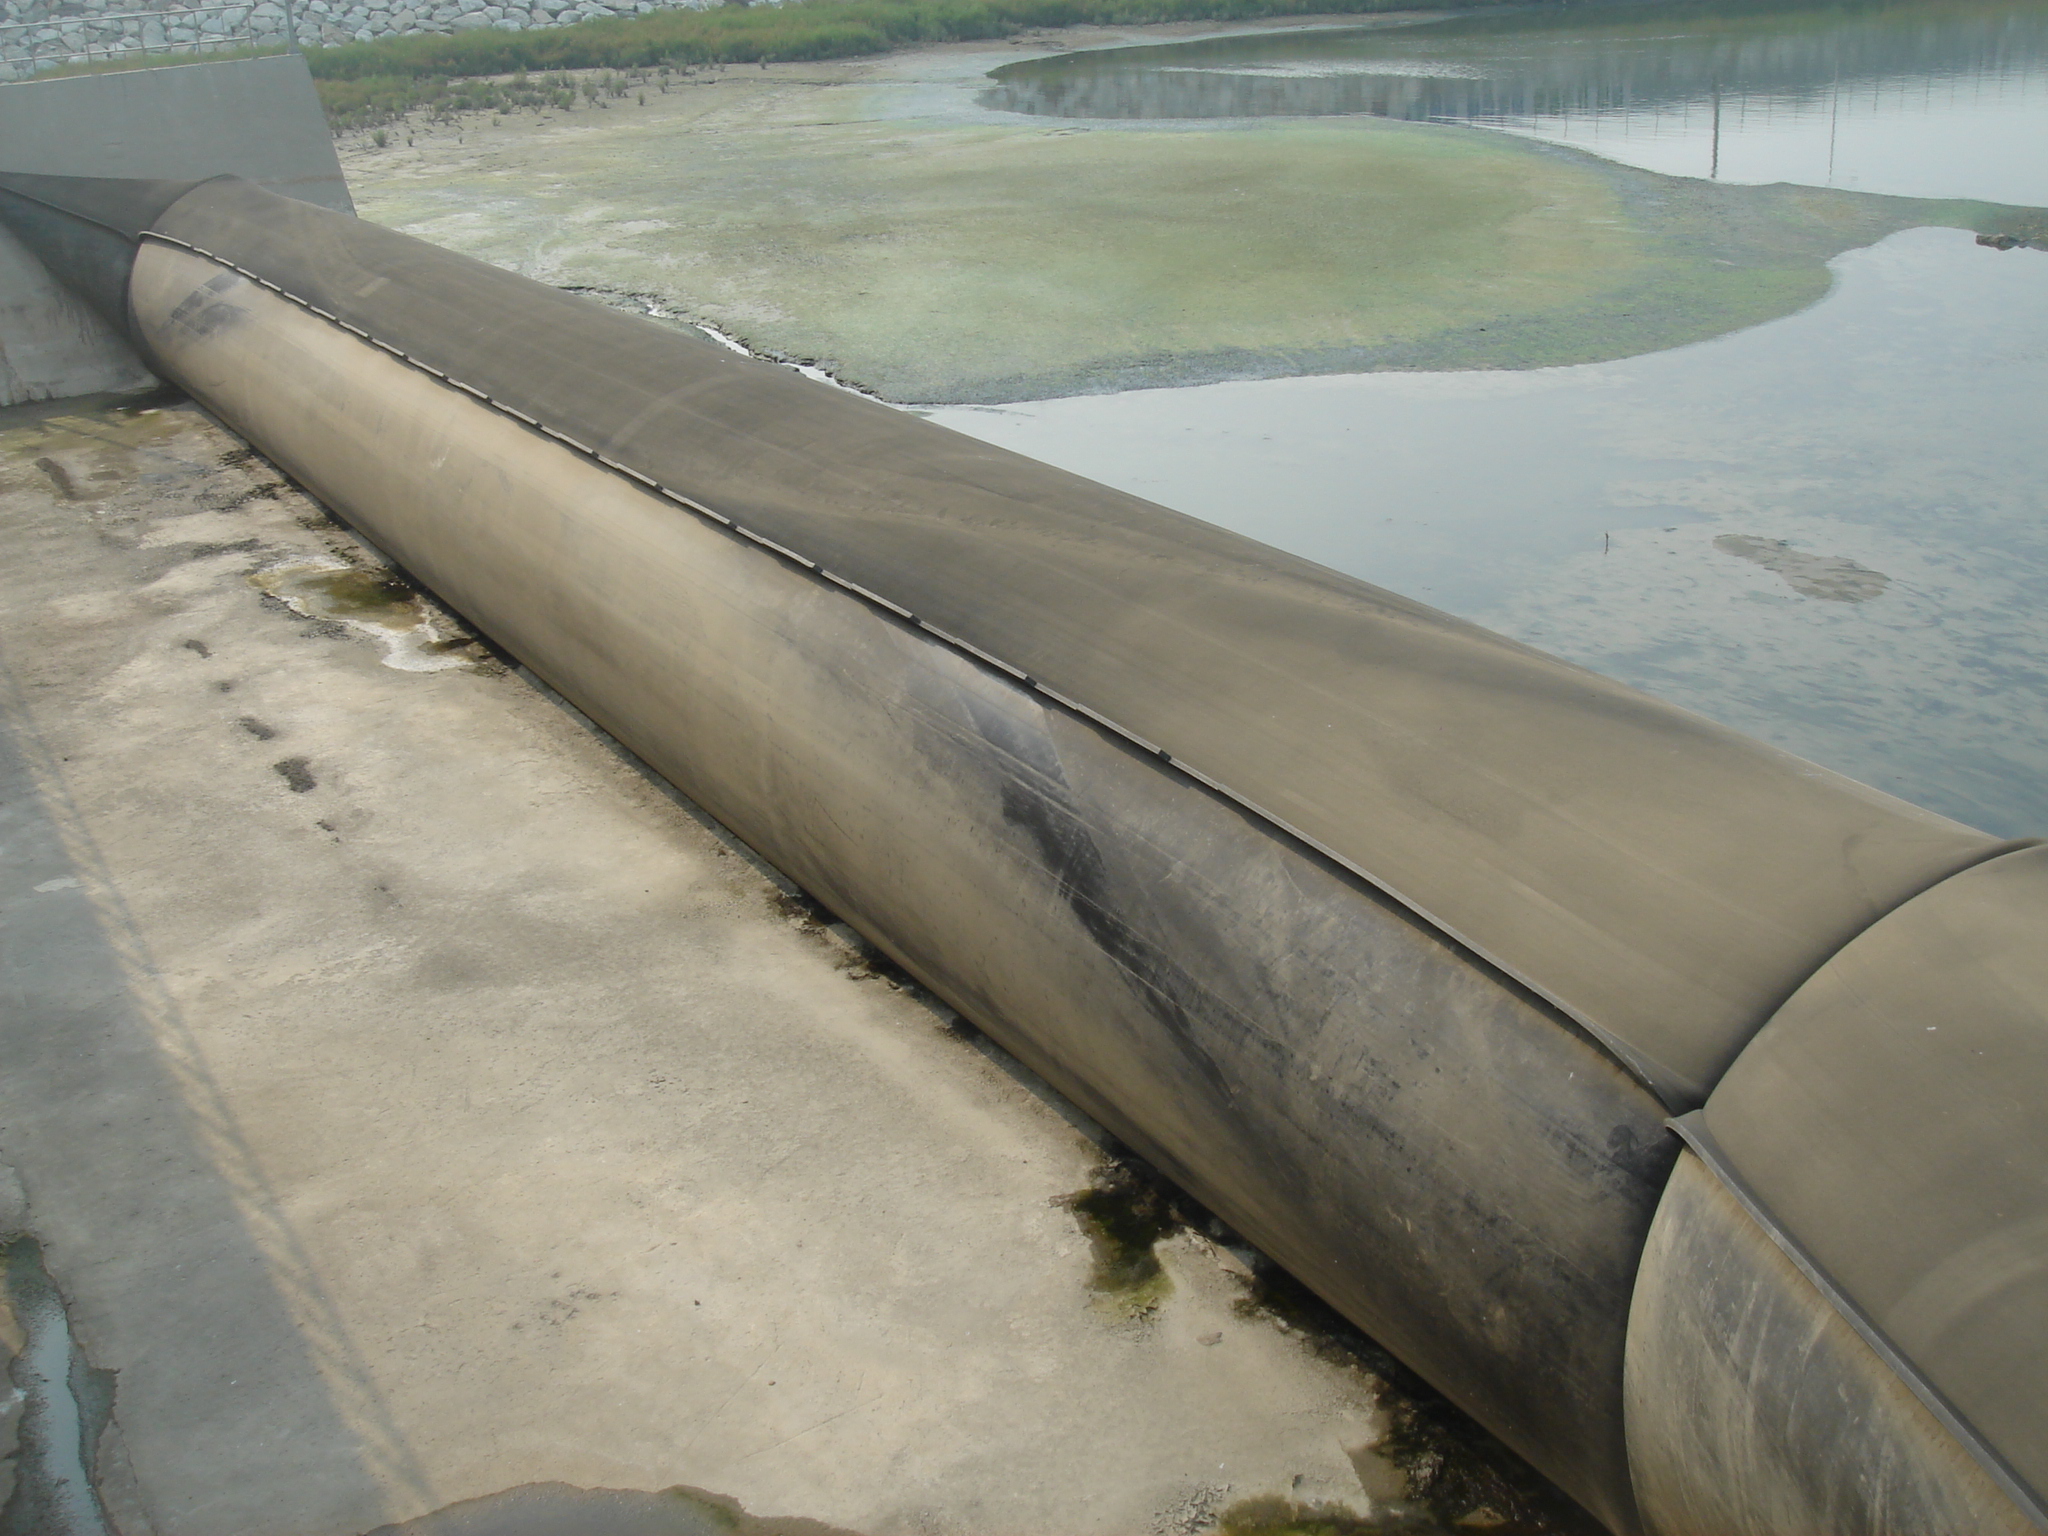 Barrera de inundación de inyección de agua flexible movible de presa de goma impermeable inflable de defensa contra inundaciones